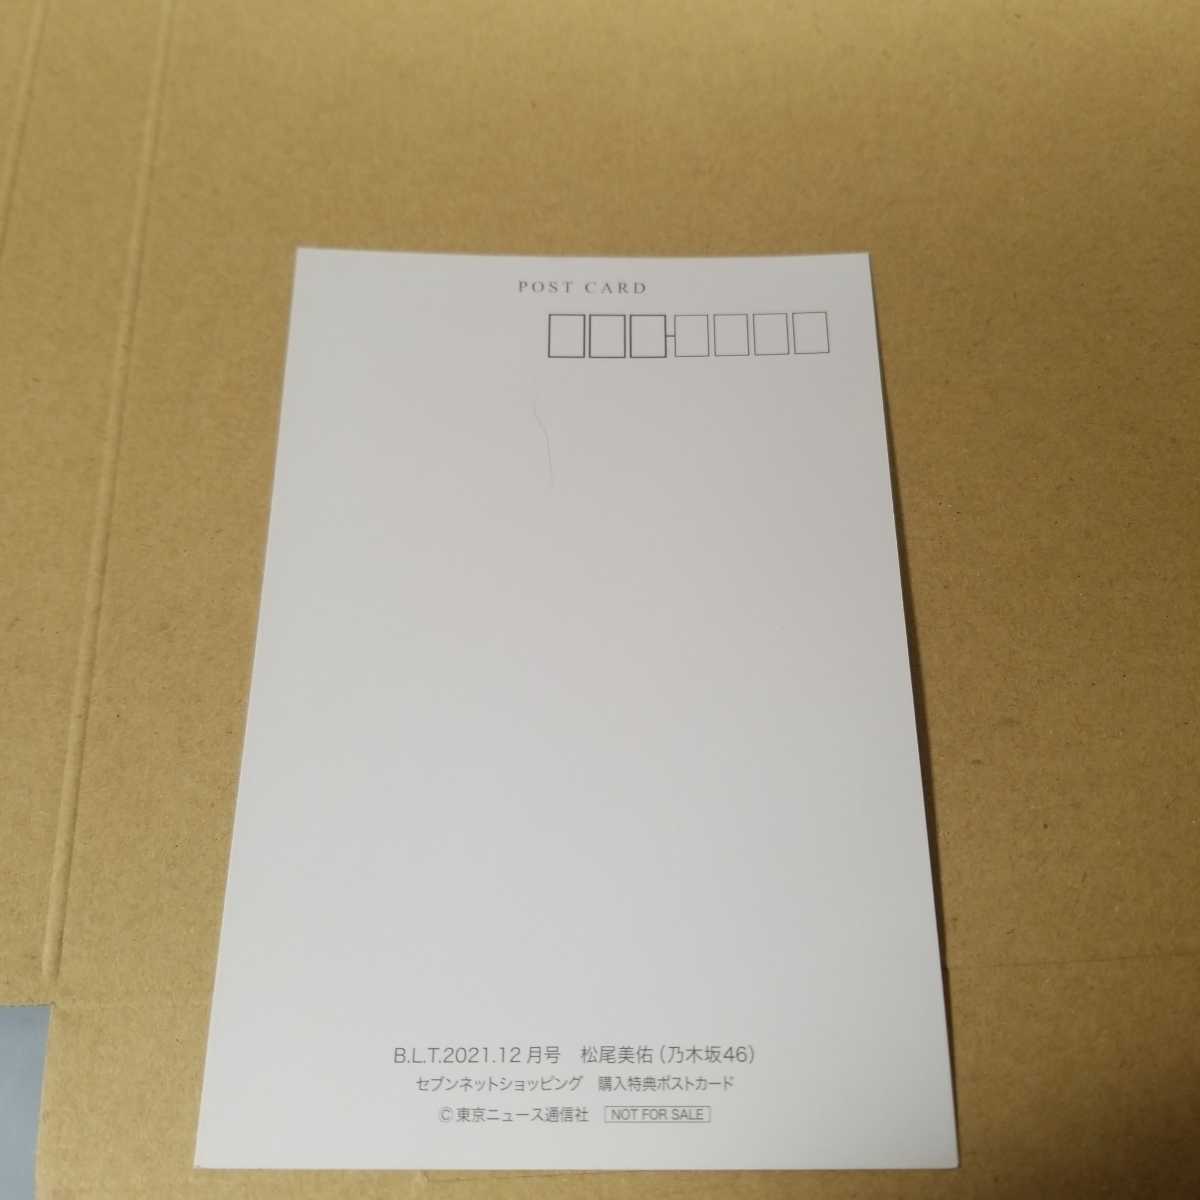 松尾美佑 乃木坂46 セブンネットショッピング特典ポストカード